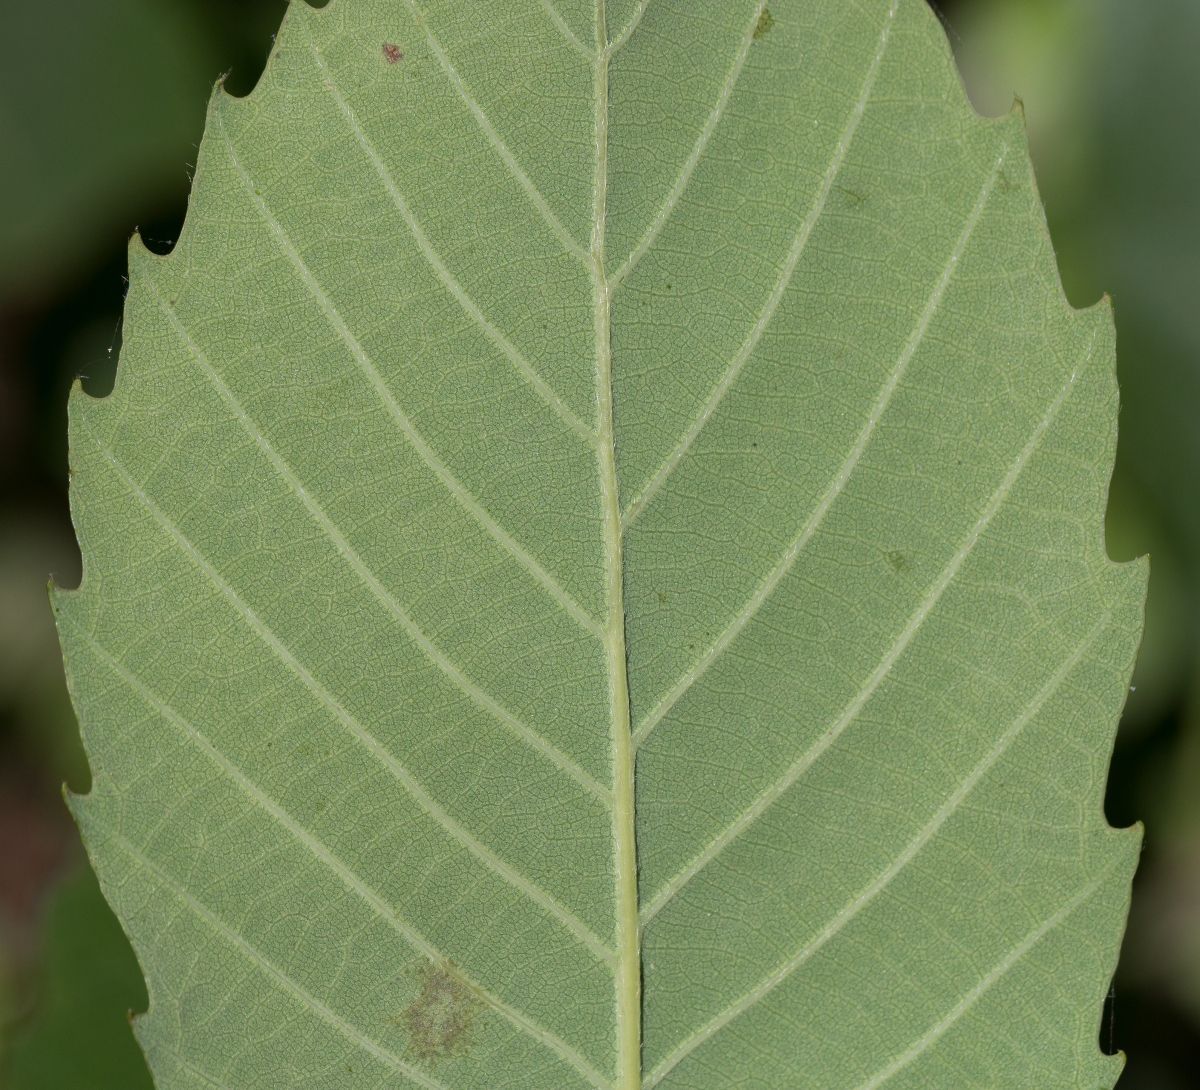 Quercus sadleriana